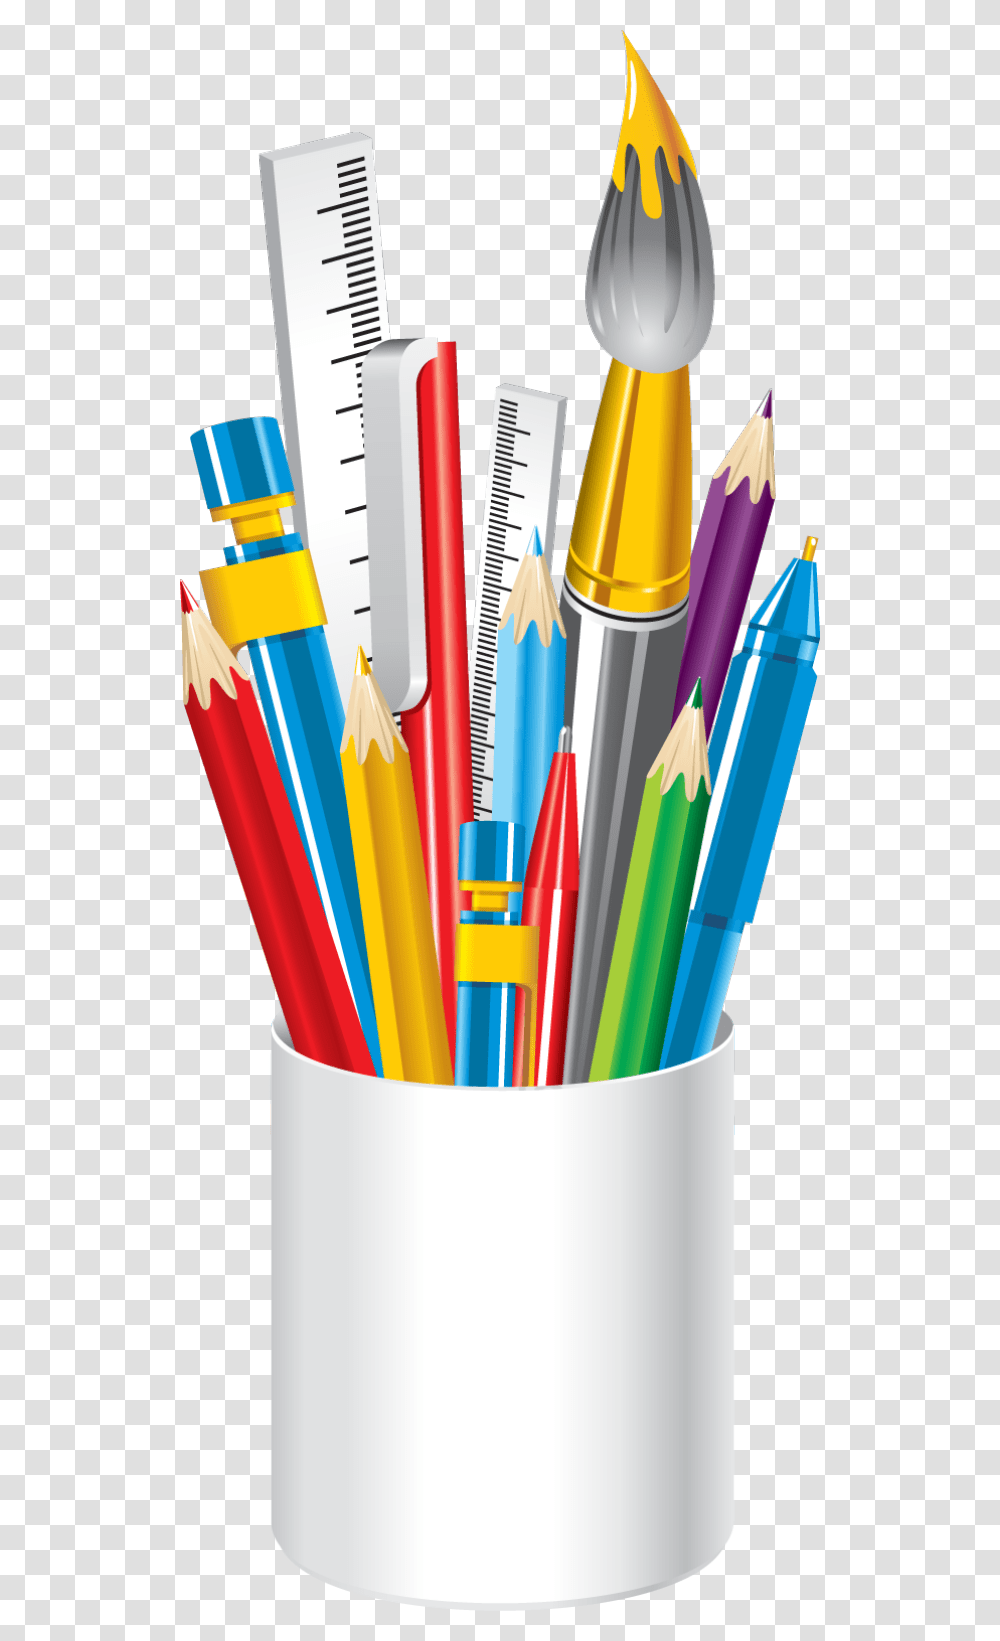 Art Supplies Clip Art, Pencil, Crayon, Toothbrush, Tool Transparent Png